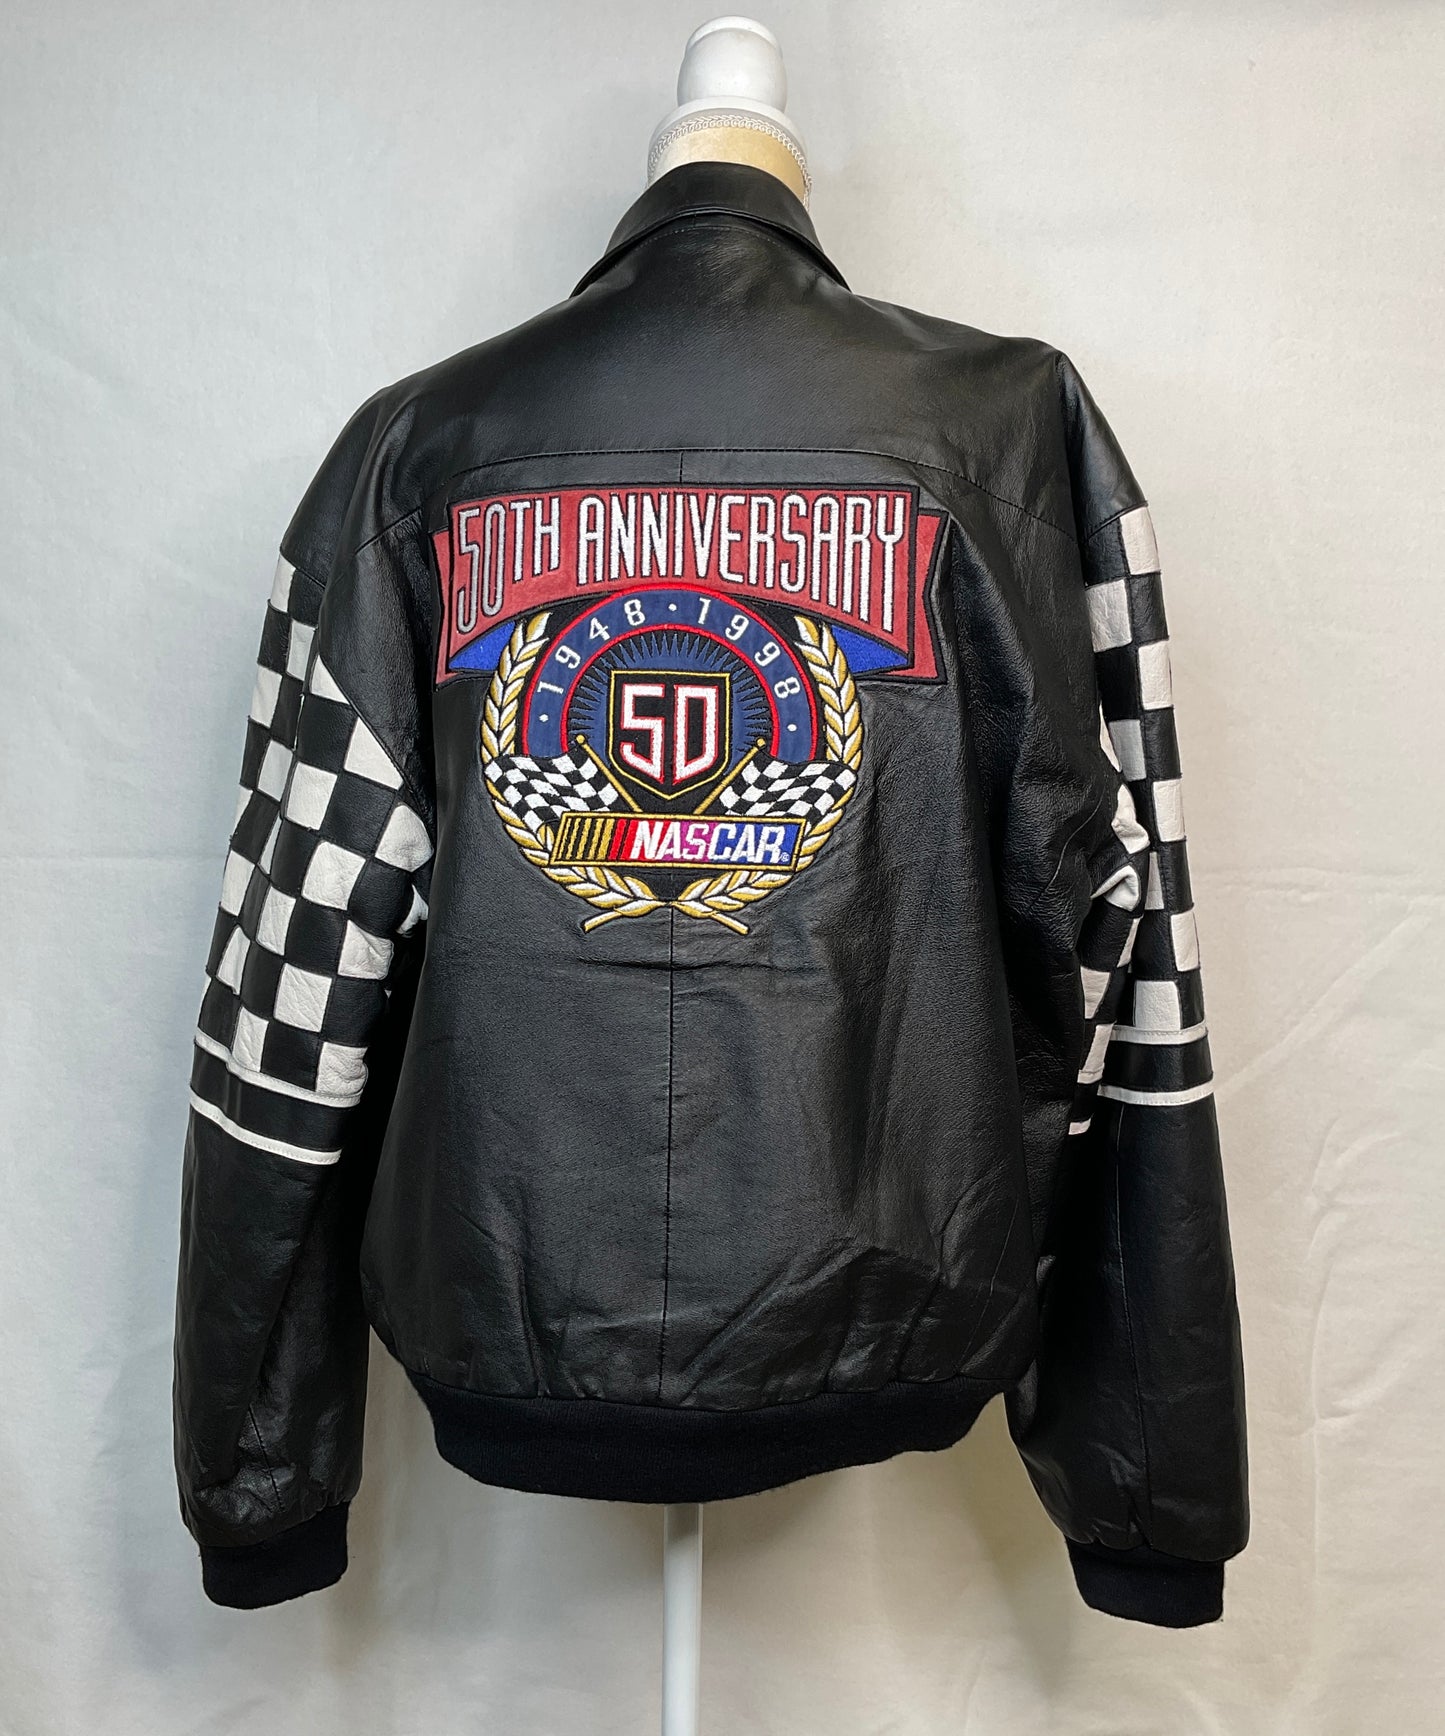 NASCAR Jeff Hamilton 50th Anniversary Jacket